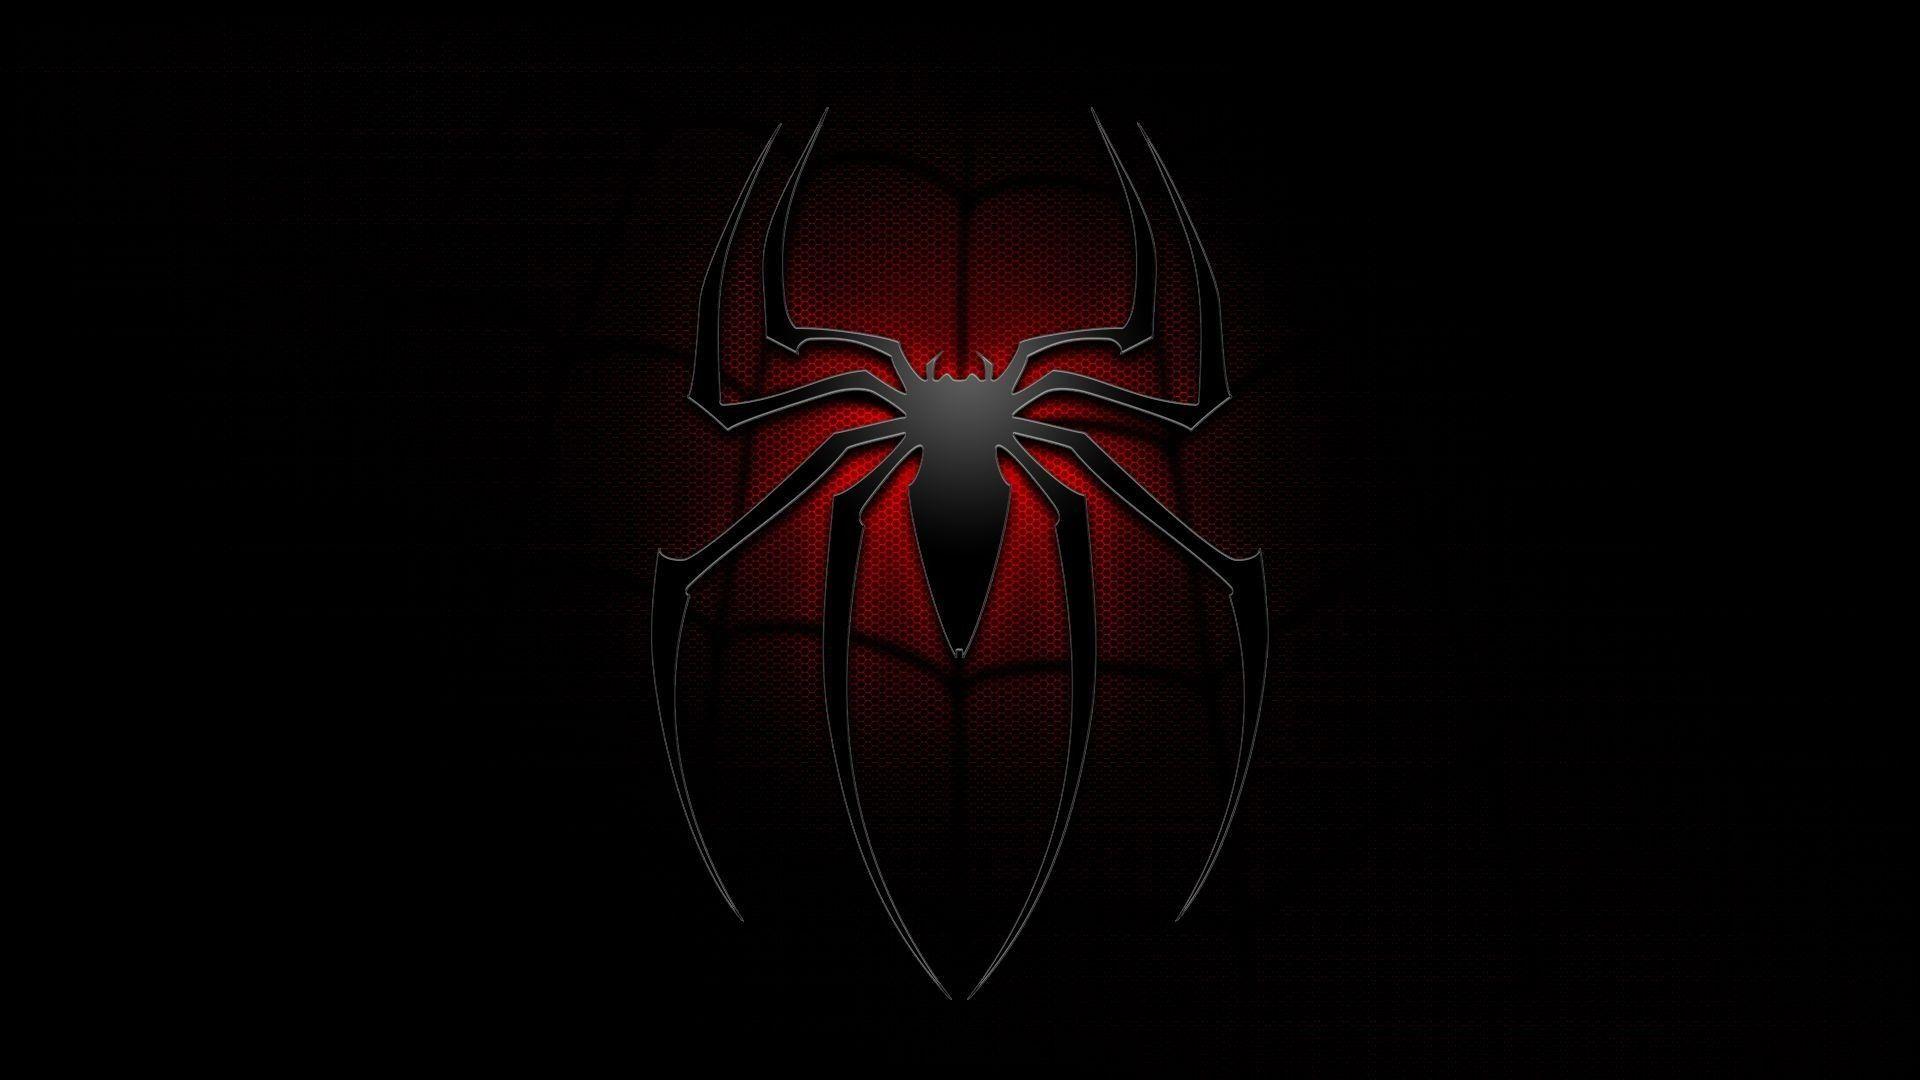 Hình nền Spider-Man đen 4k - Spider-Man là một trong những siêu anh hùng được yêu thích nhất trong vũ trụ Marvel. Và với hình ảnh Spider-Man đen được thiết kế 4k chất lượng cao, bạn sẽ có được một màn hình cực kỳ đẹp và sống động. Bộ phim mới nhất về Spider-Man chắc chắn sẽ không khiến bạn thất vọng khi trang trí màn hình máy tính của mình với hình nền này.